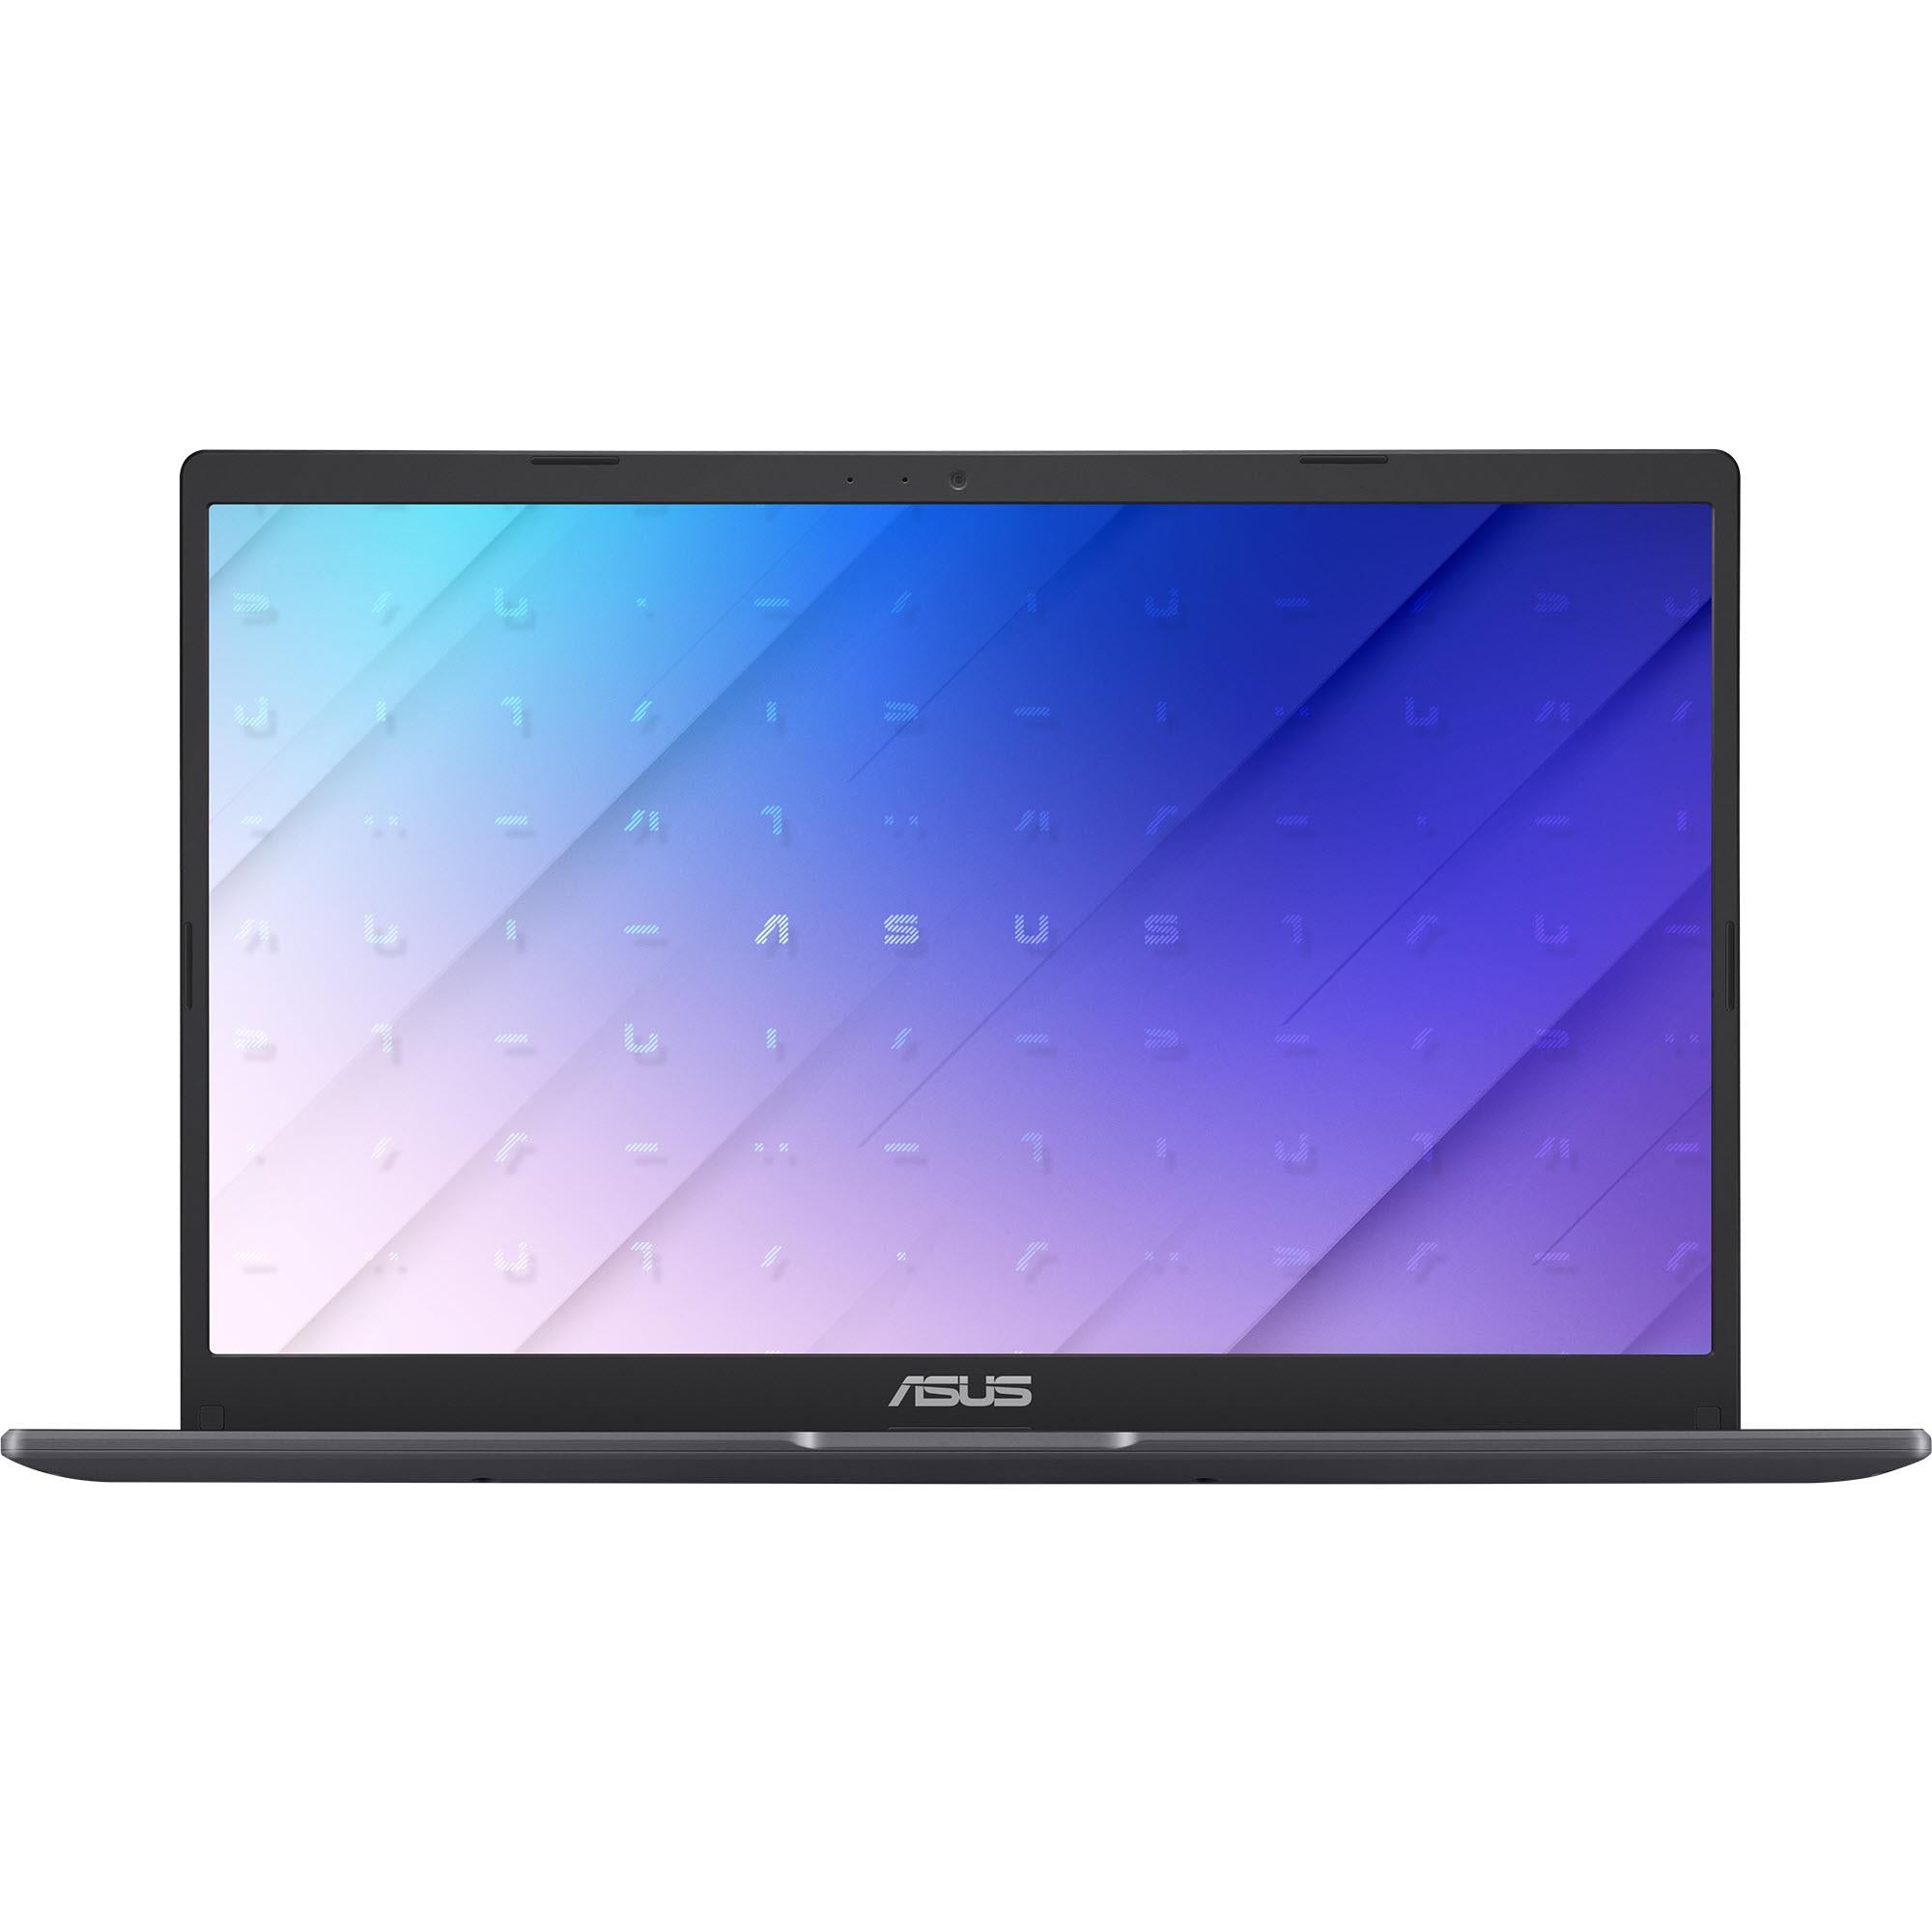 Portátil Asus Vivobook X512fa Br1509t Intel Core I3 Gen